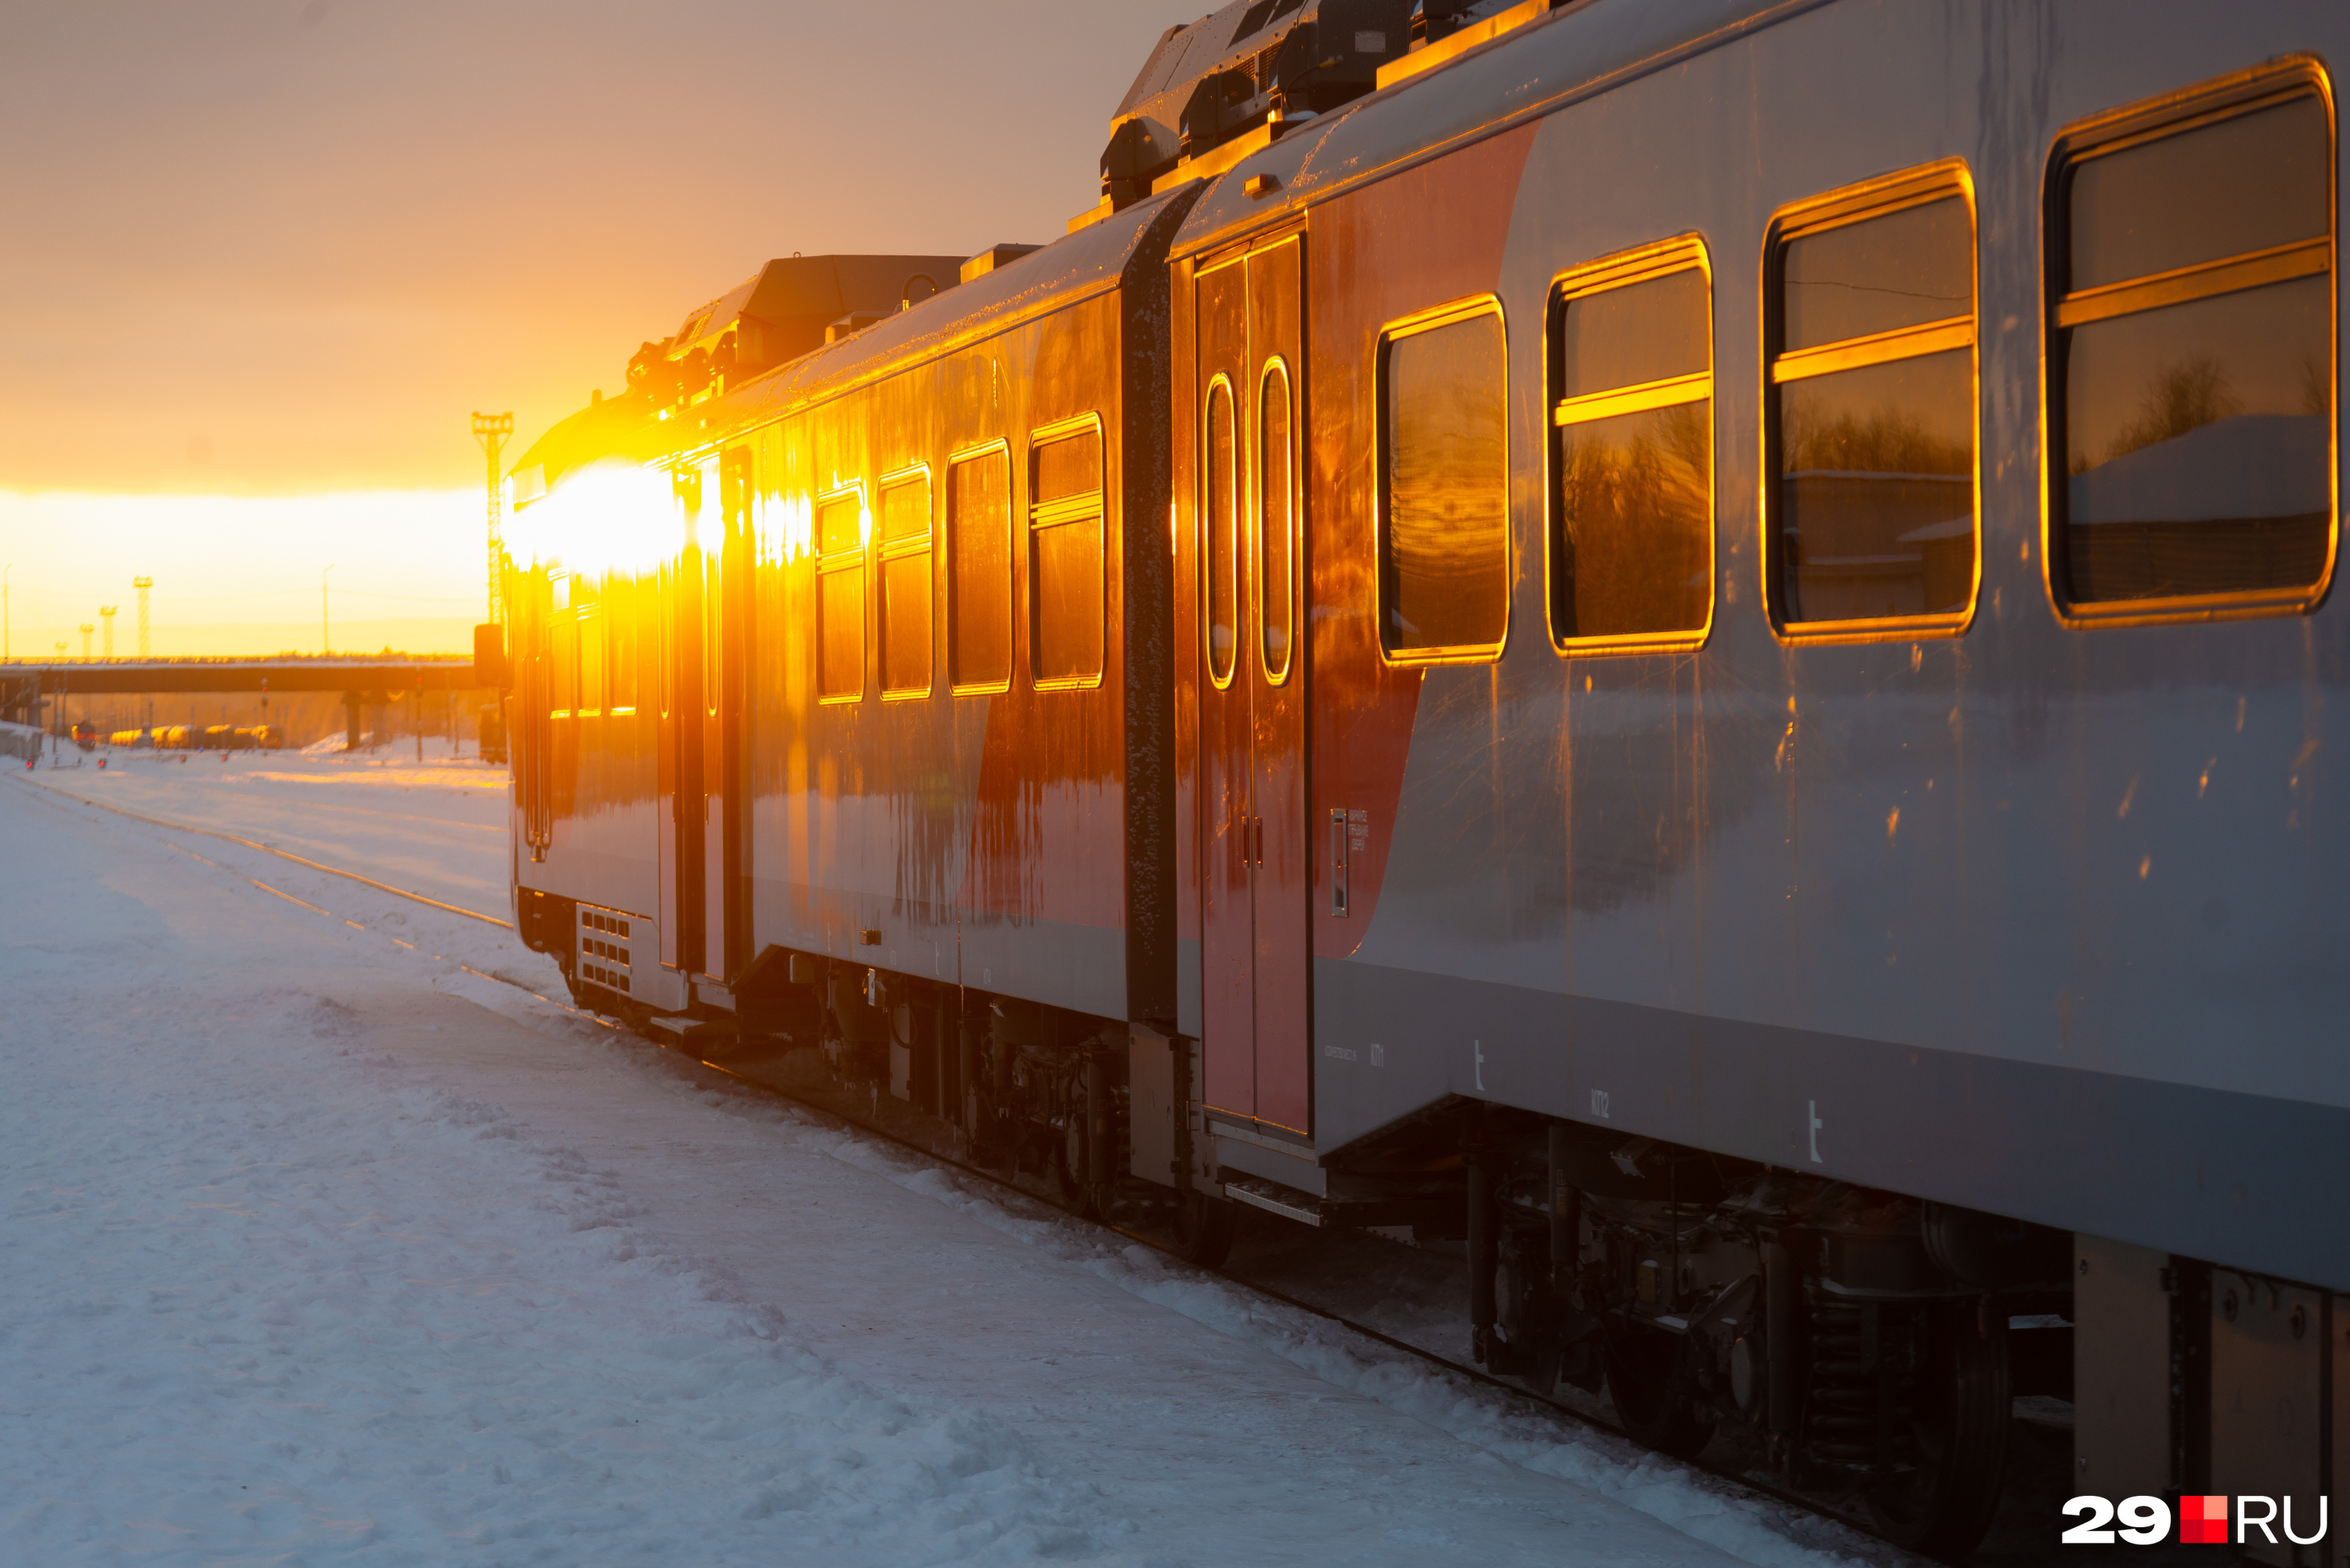 На этом поезде можно добраться до Архангельска